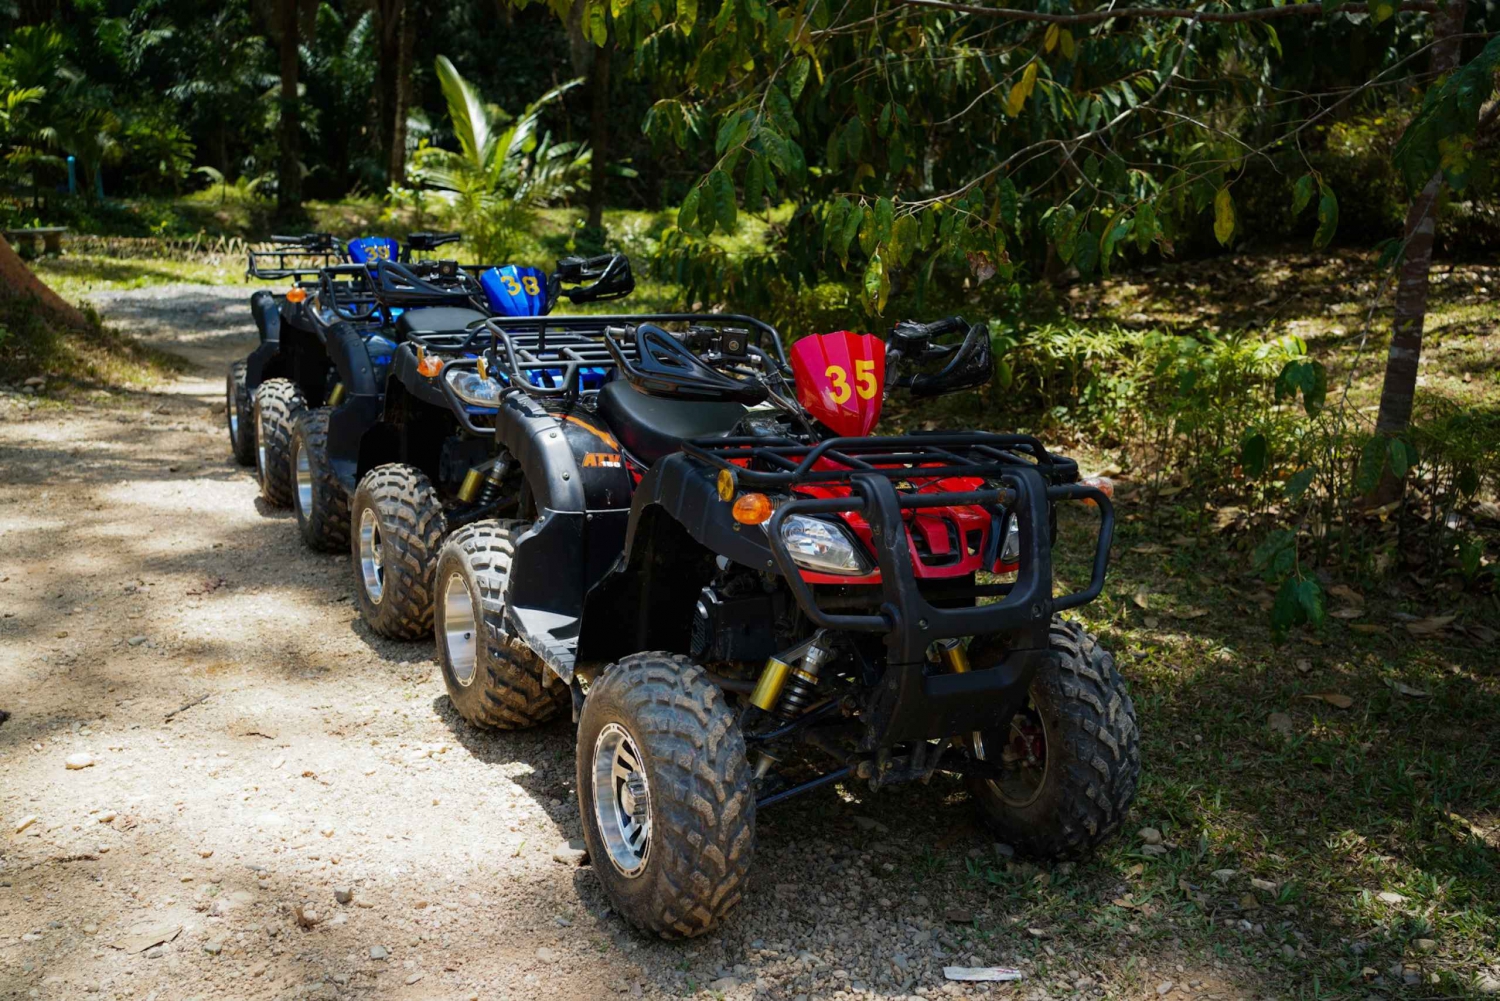 Phuket: ATV Experience and Zipline Combinaton Trip